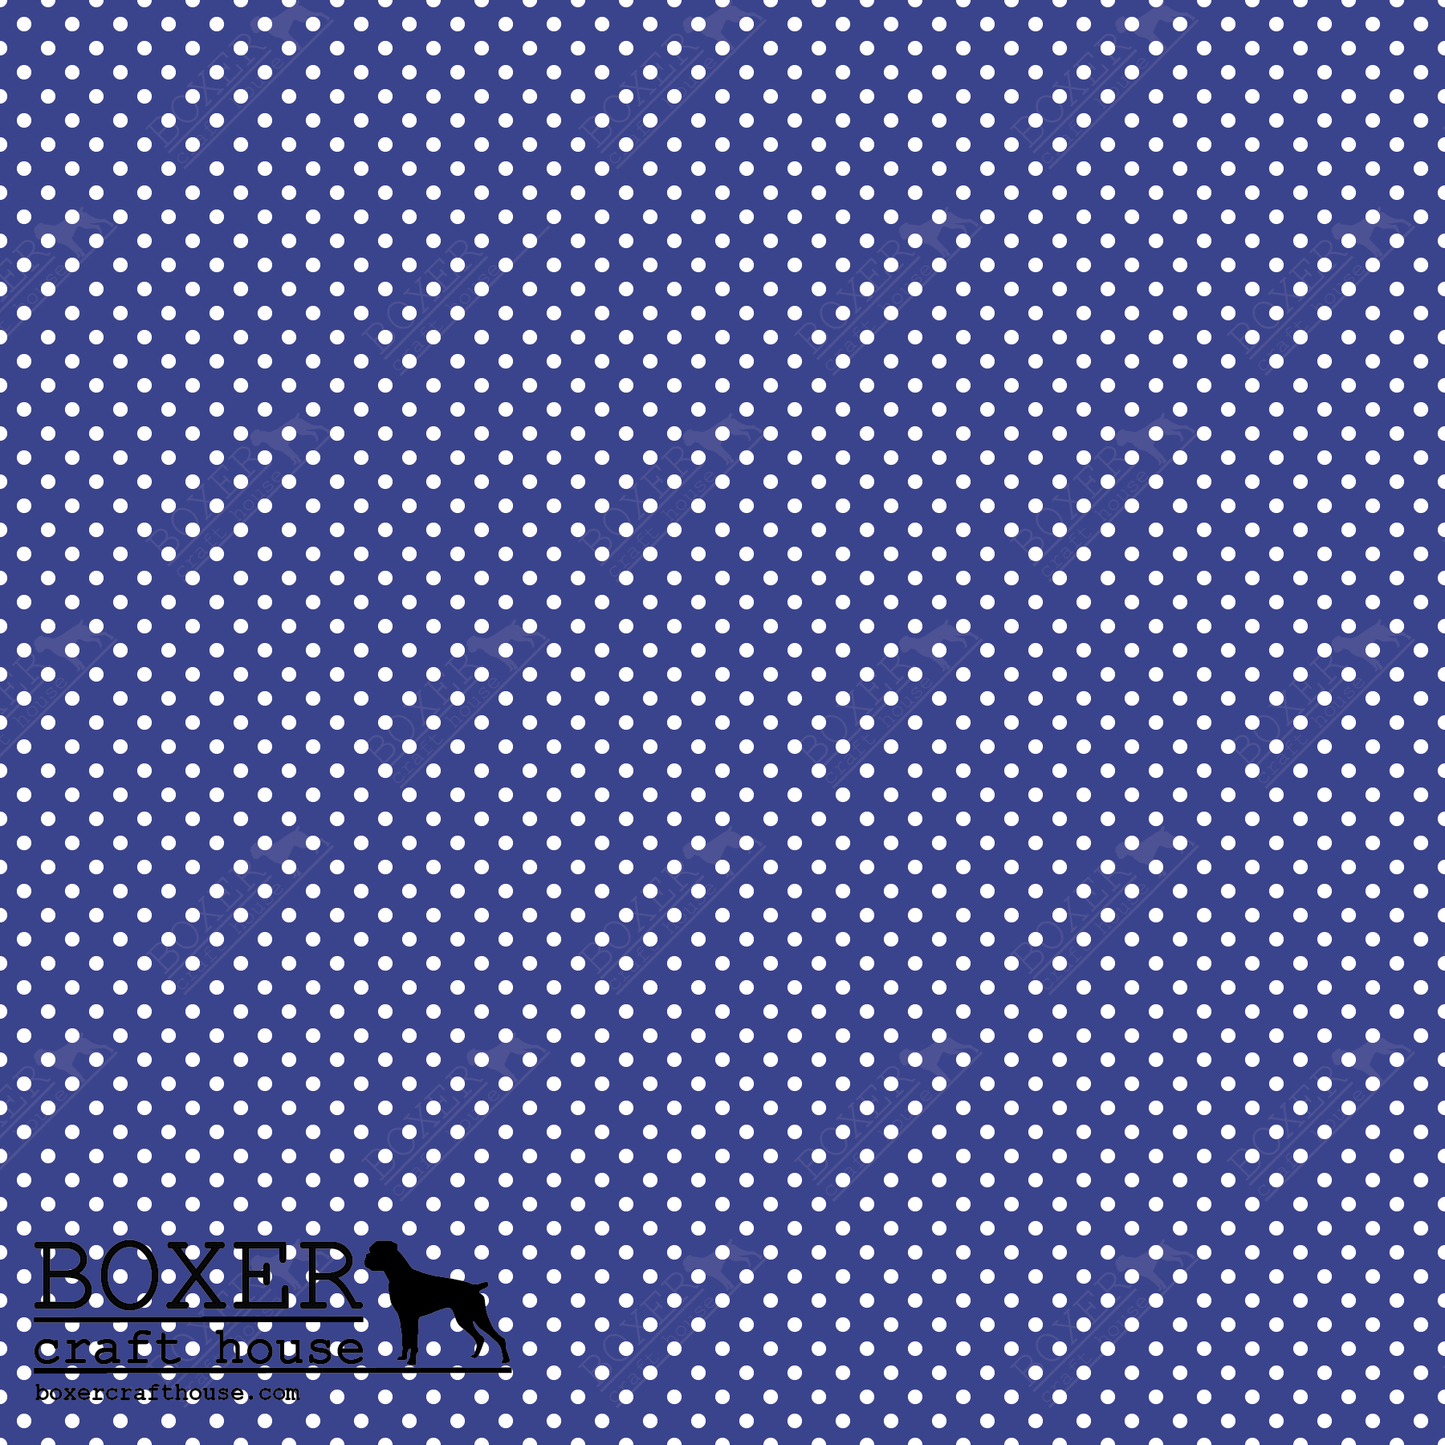 Dots 1/16" - Royal Blue